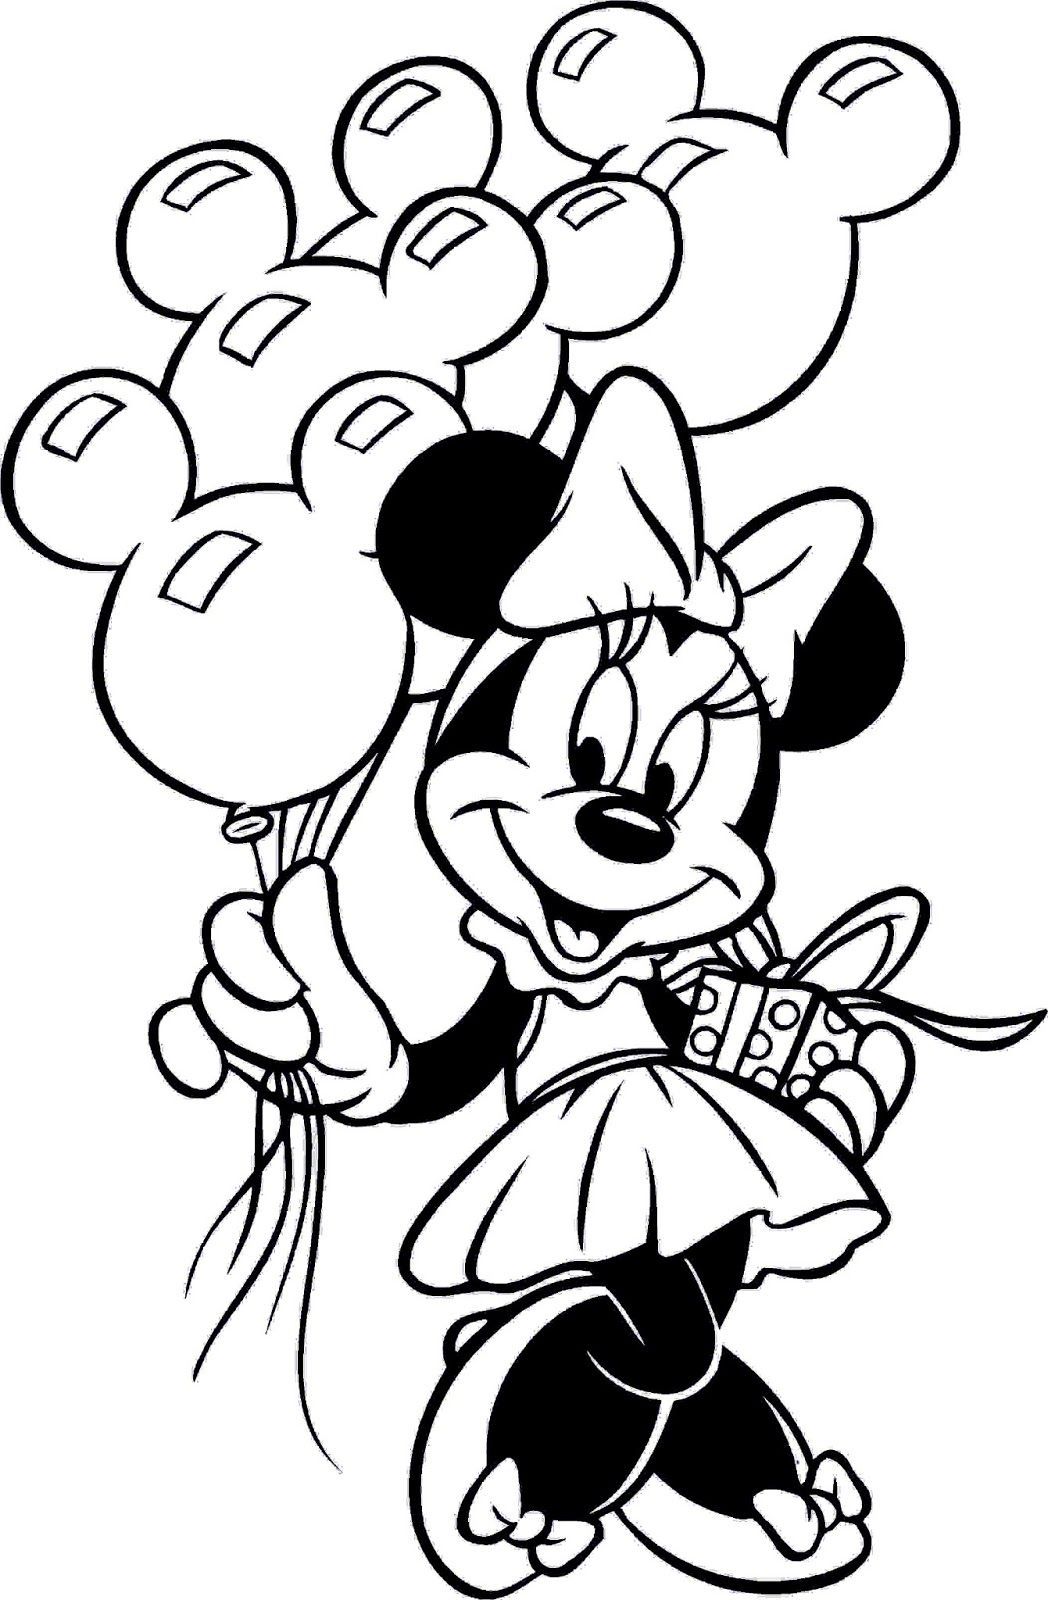 Minnie Mouse com balões da Minnie Mouse